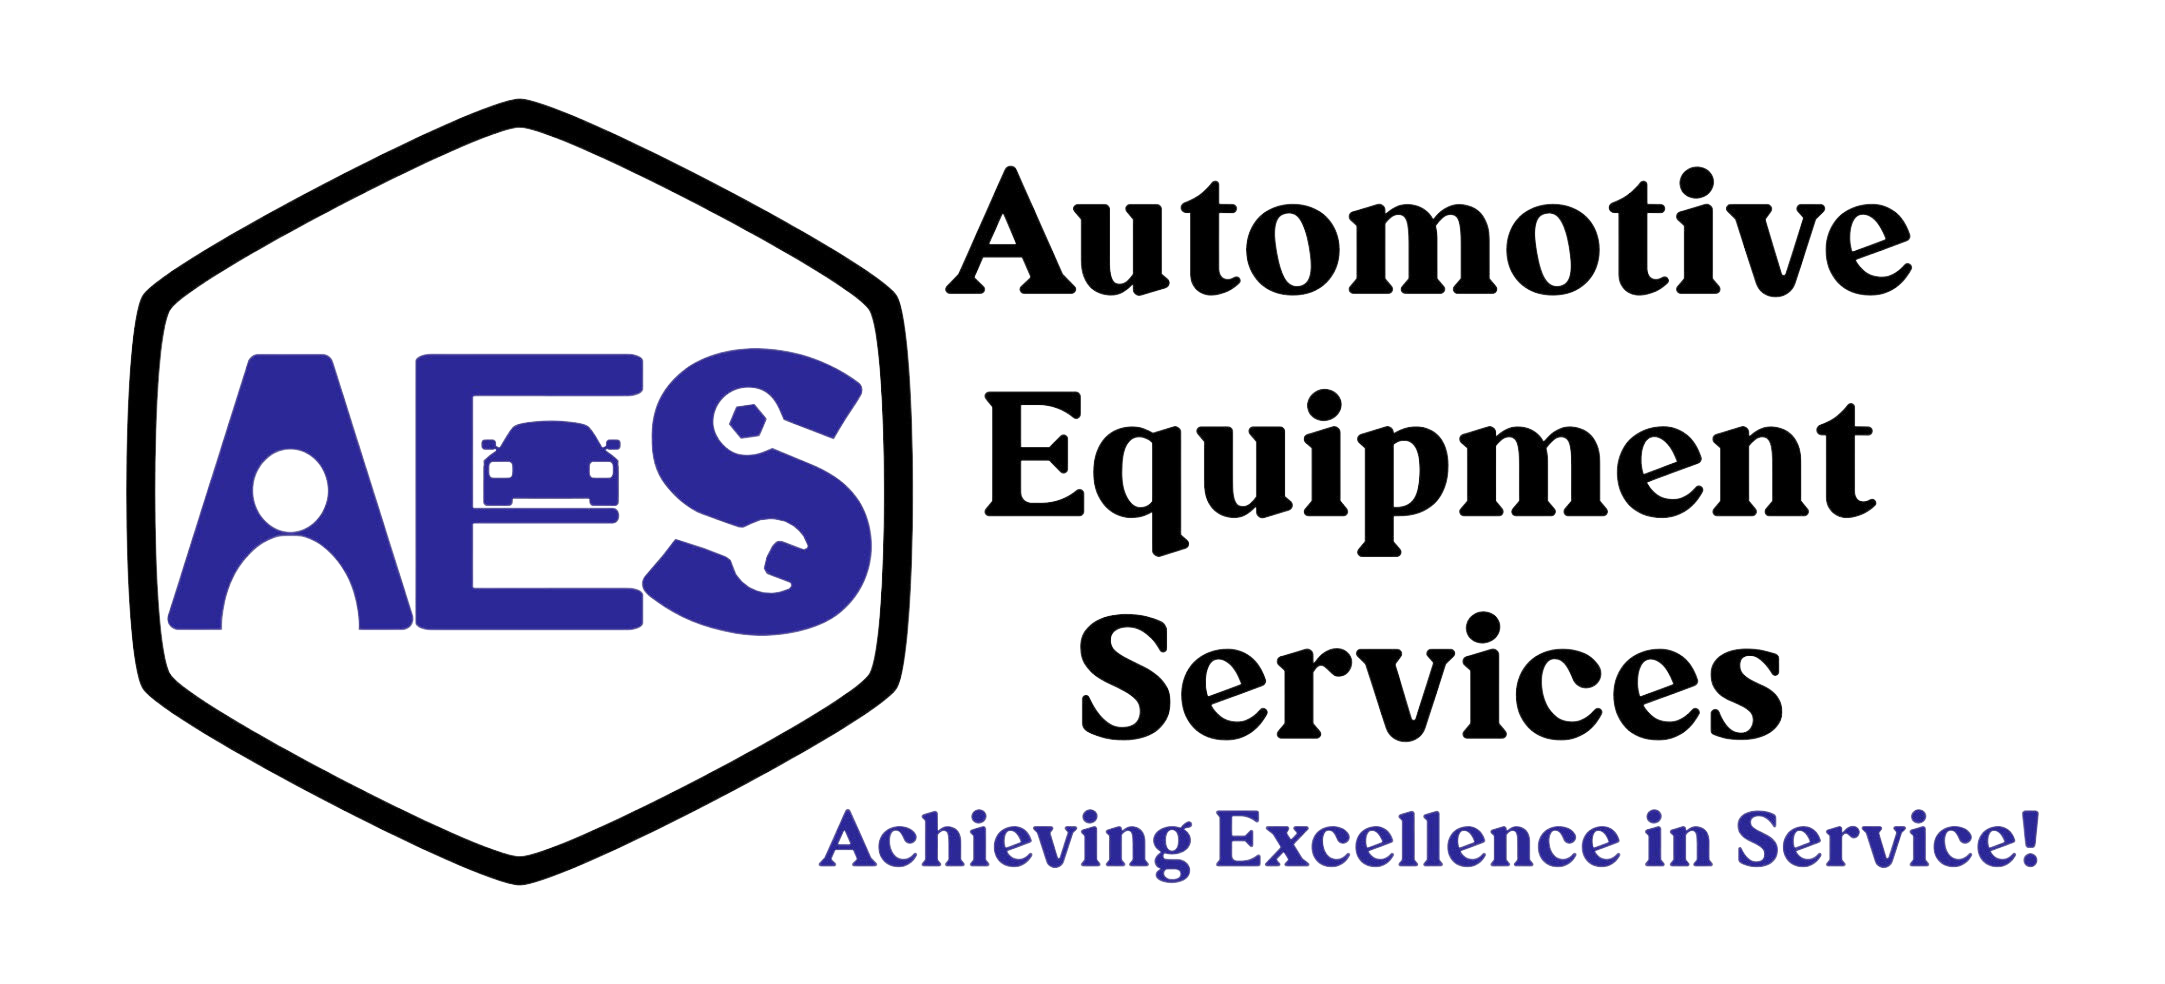 Home - Automotive Equipment Services